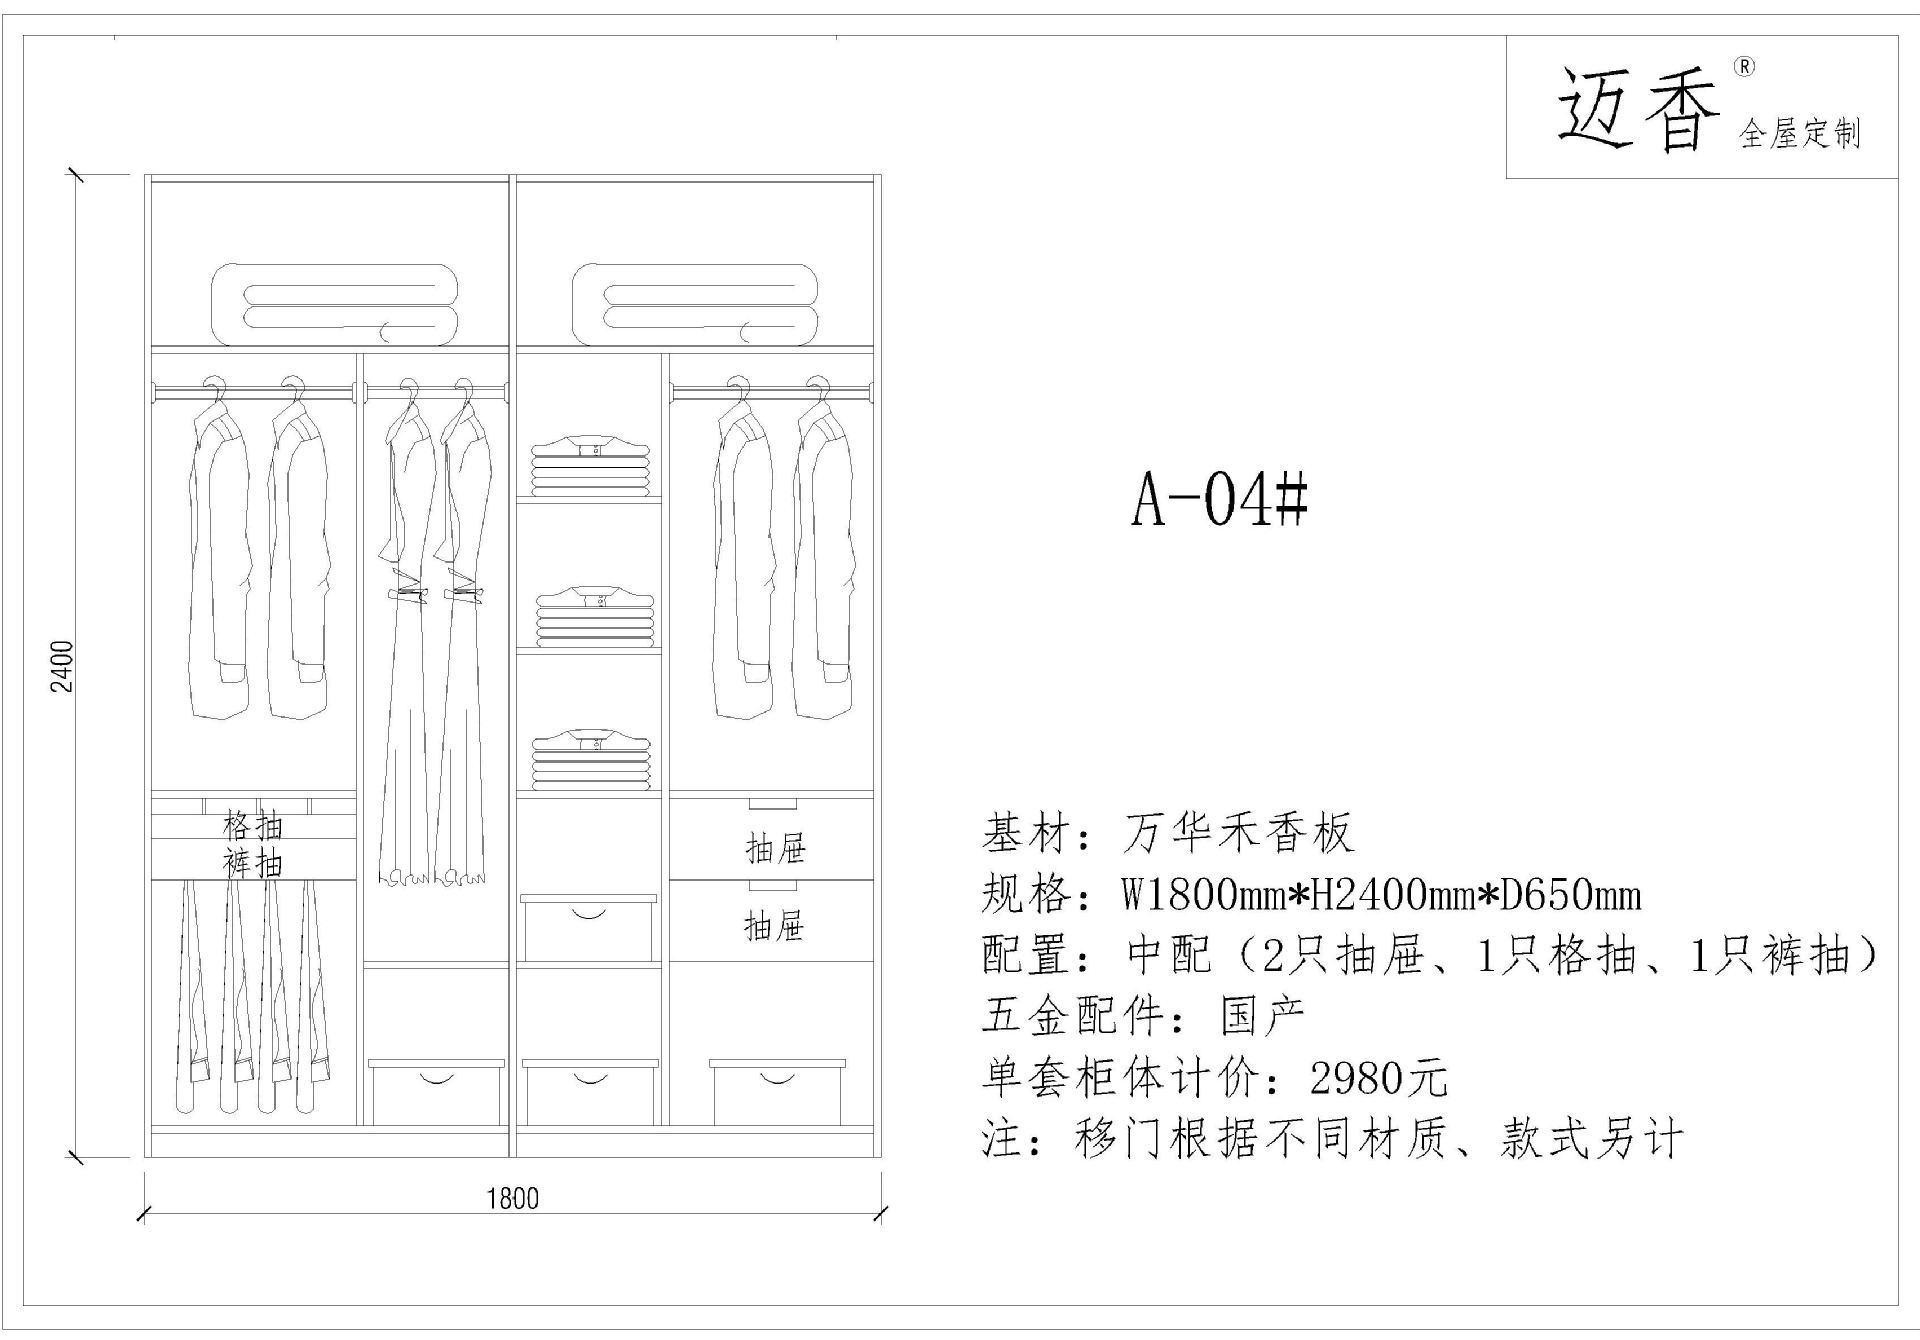 上海整体衣柜加工定制 环保无甲醛衣柜定制  板式家具定制衣柜厂